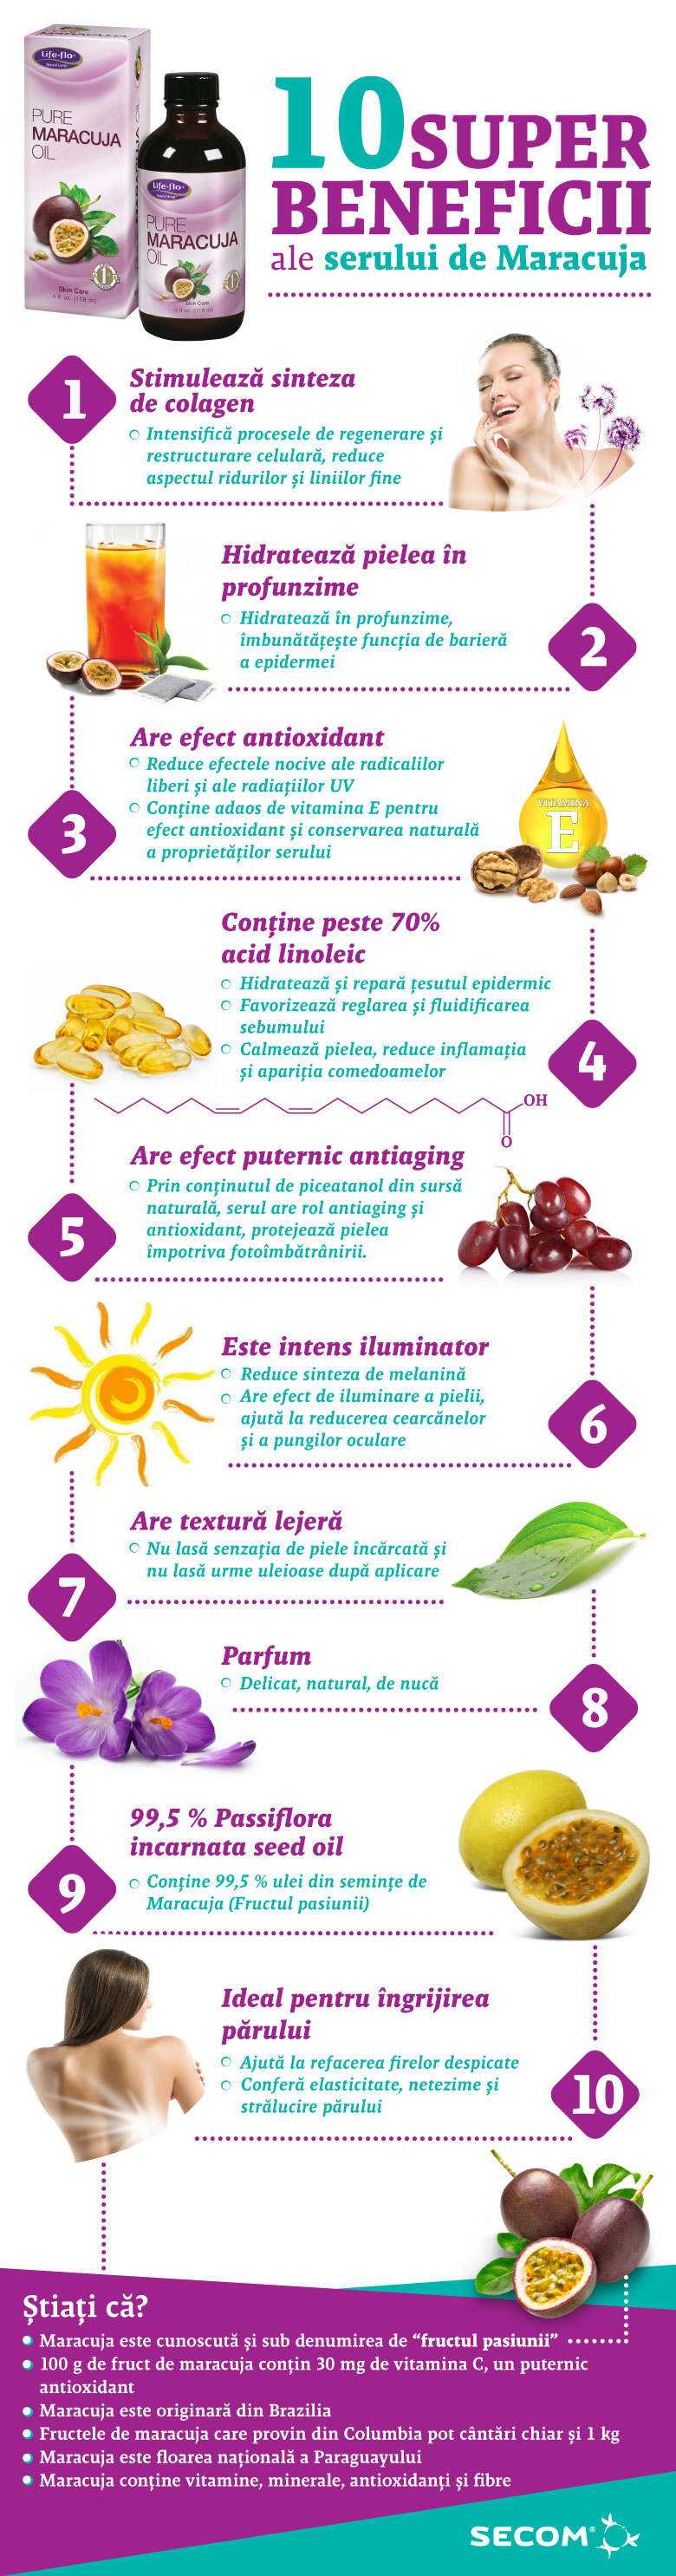 Beneficiile serului de Maracuja - Fructul pasiunii